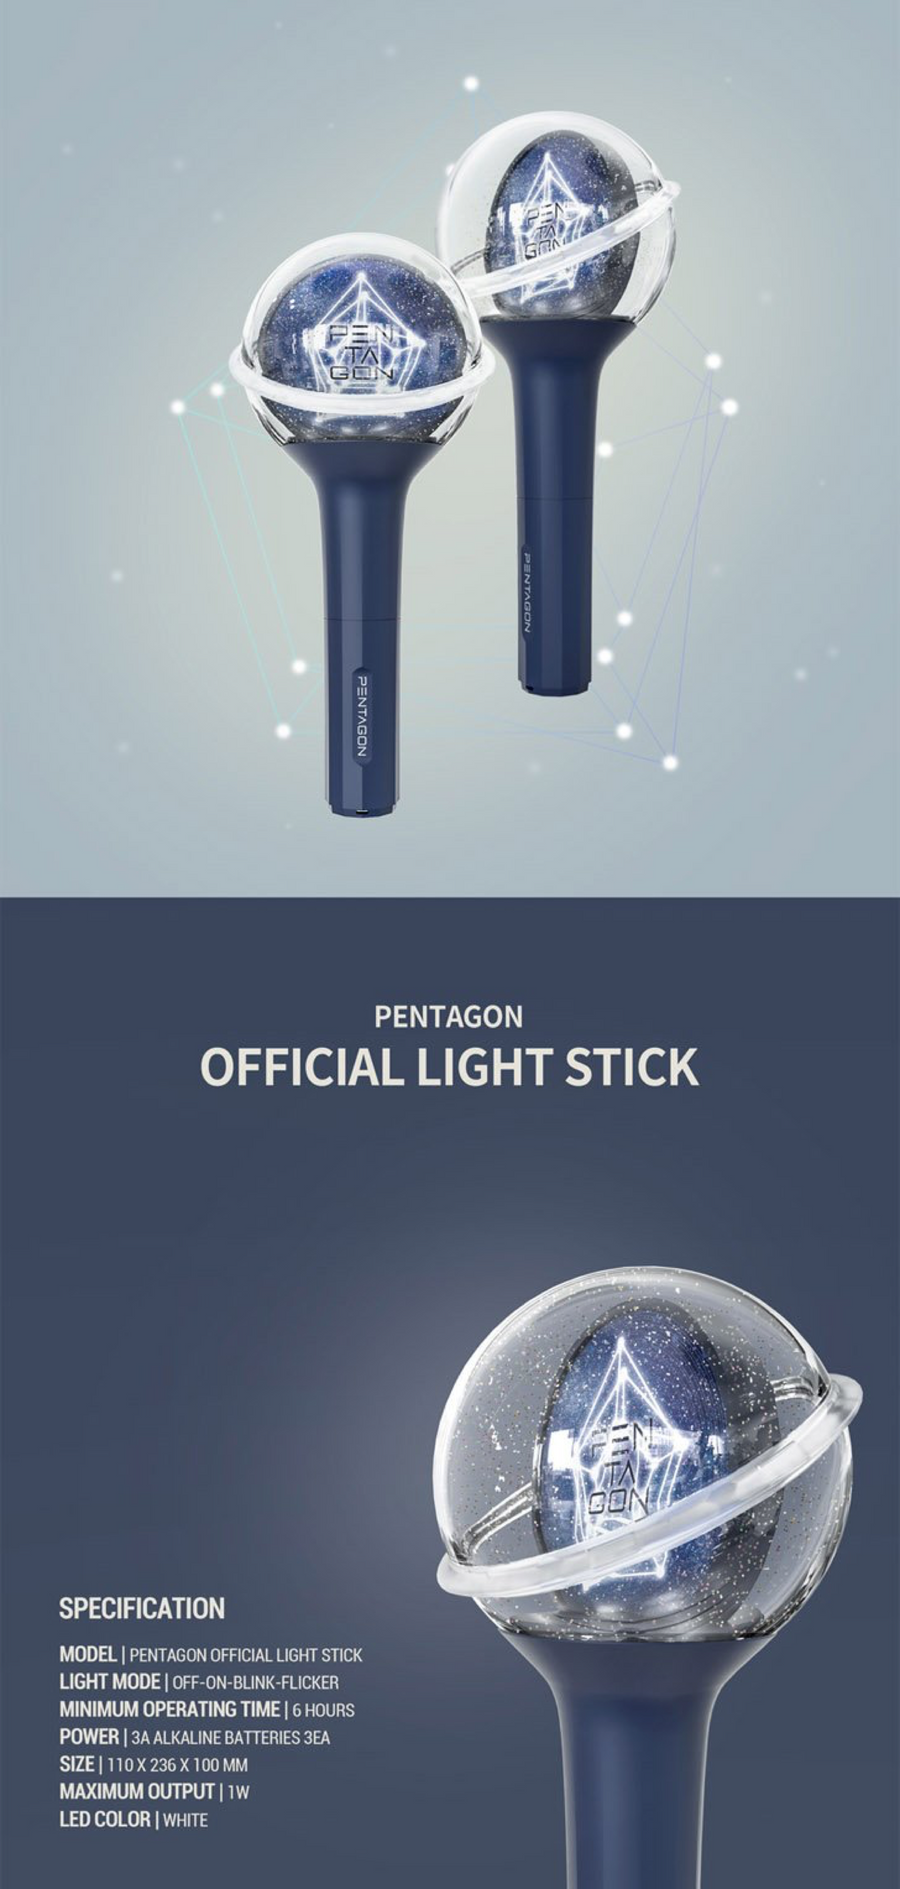 Pentagon Official Light Stick